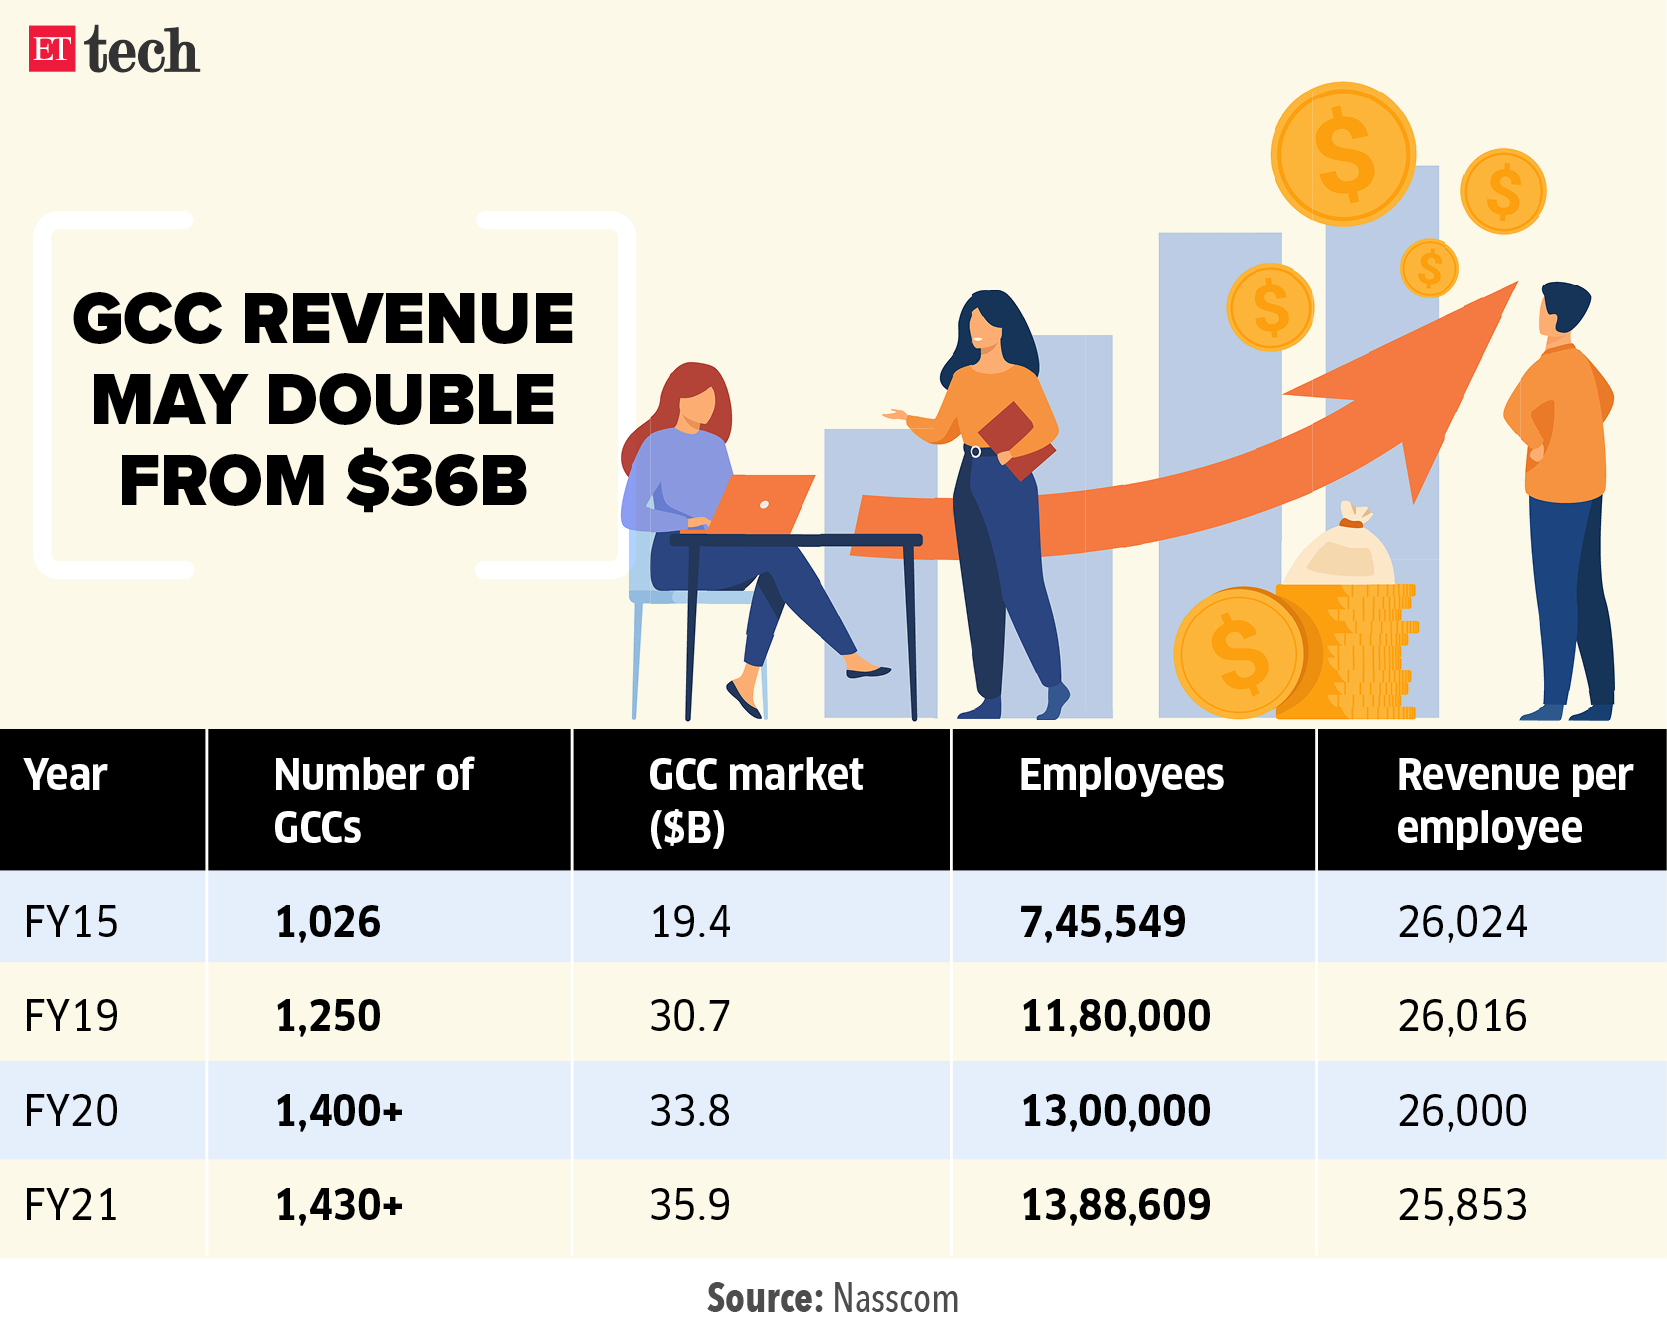 GCC revenue